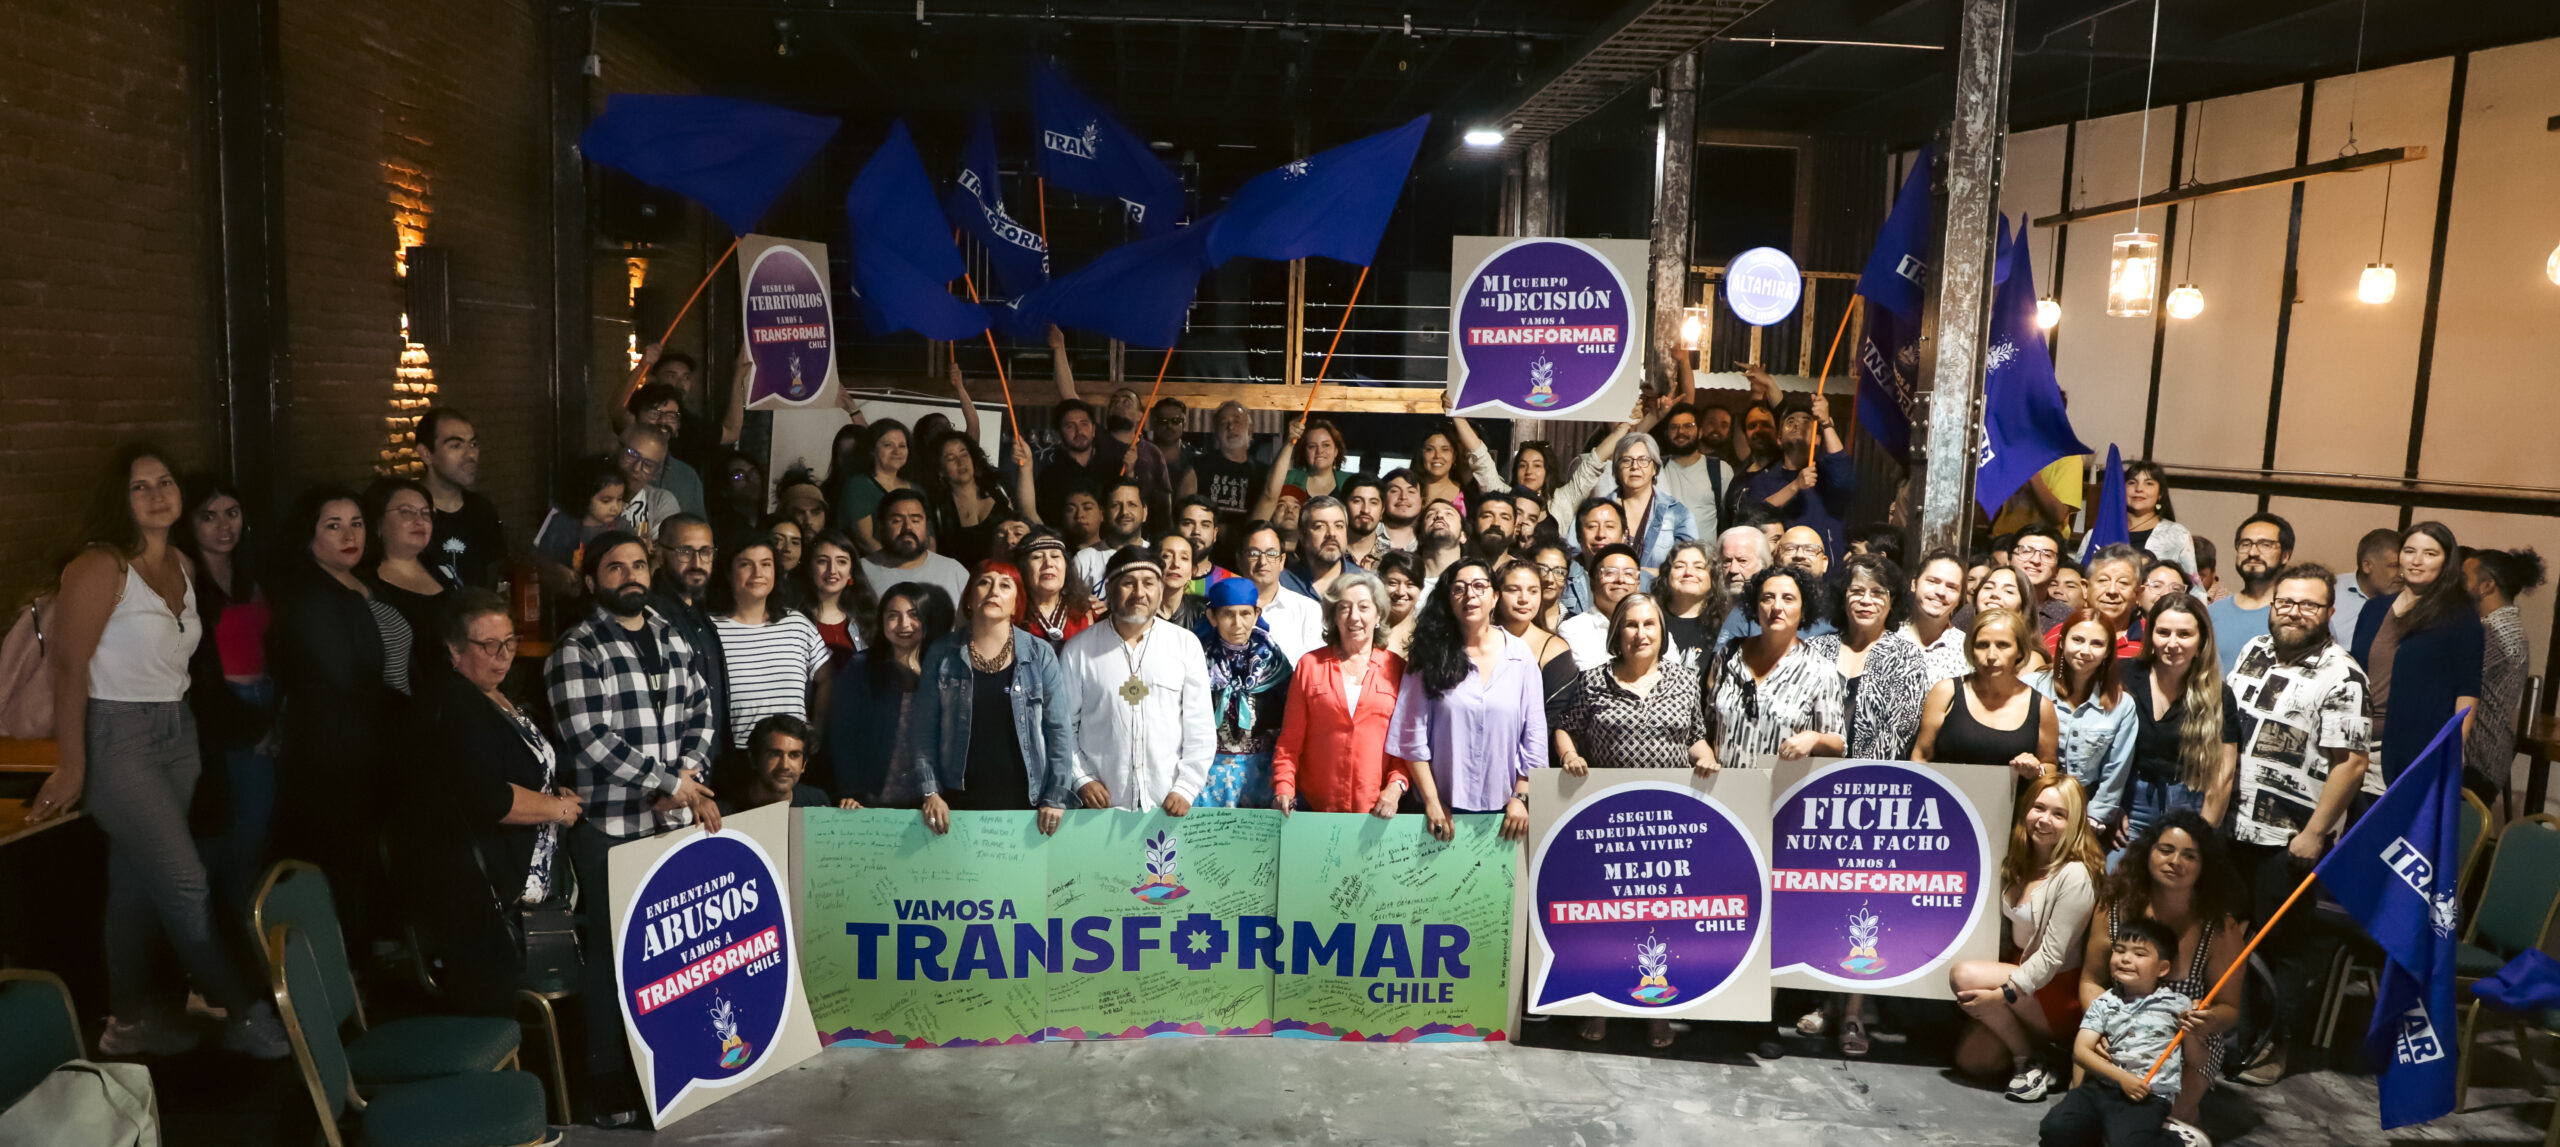  Nuevo actor en la esfera política Chilena | Movimiento «Transformar Chile» iniciará en marzo proceso legal para convertirse en partido político